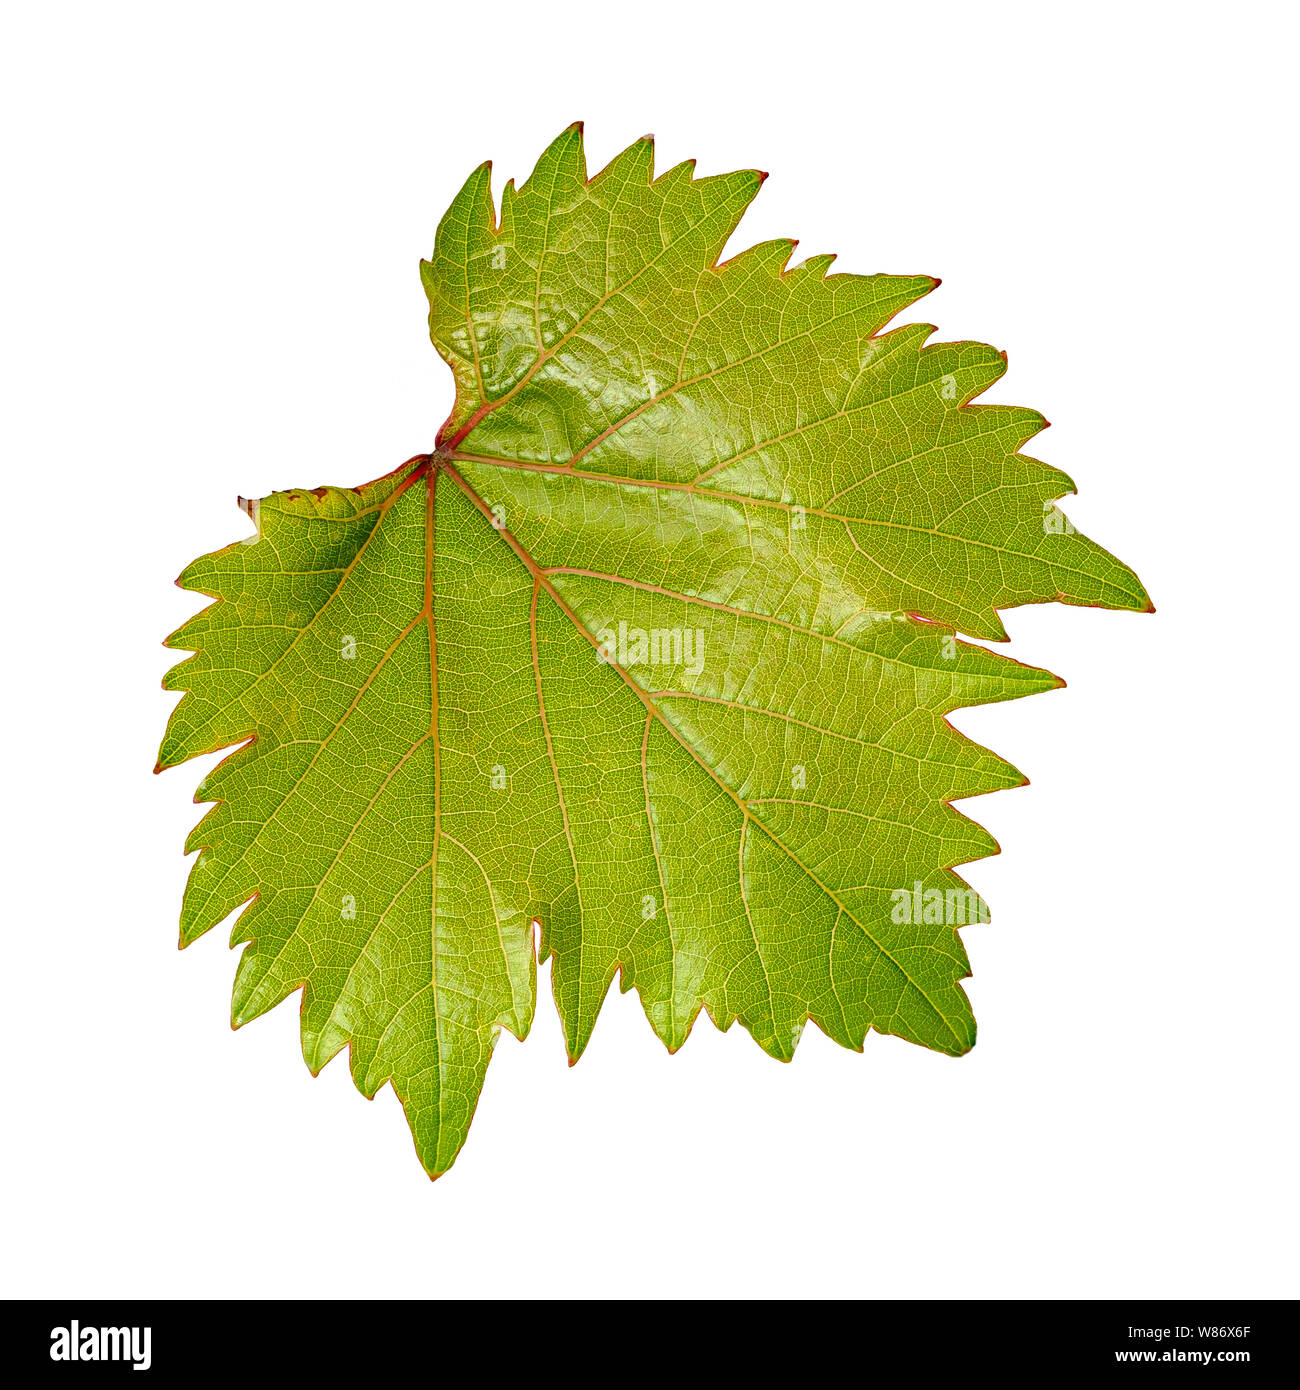 Macro astratta di una giovane e bella del vino verde foglia con venature rosse isolato su uno sfondo bianco Foto Stock